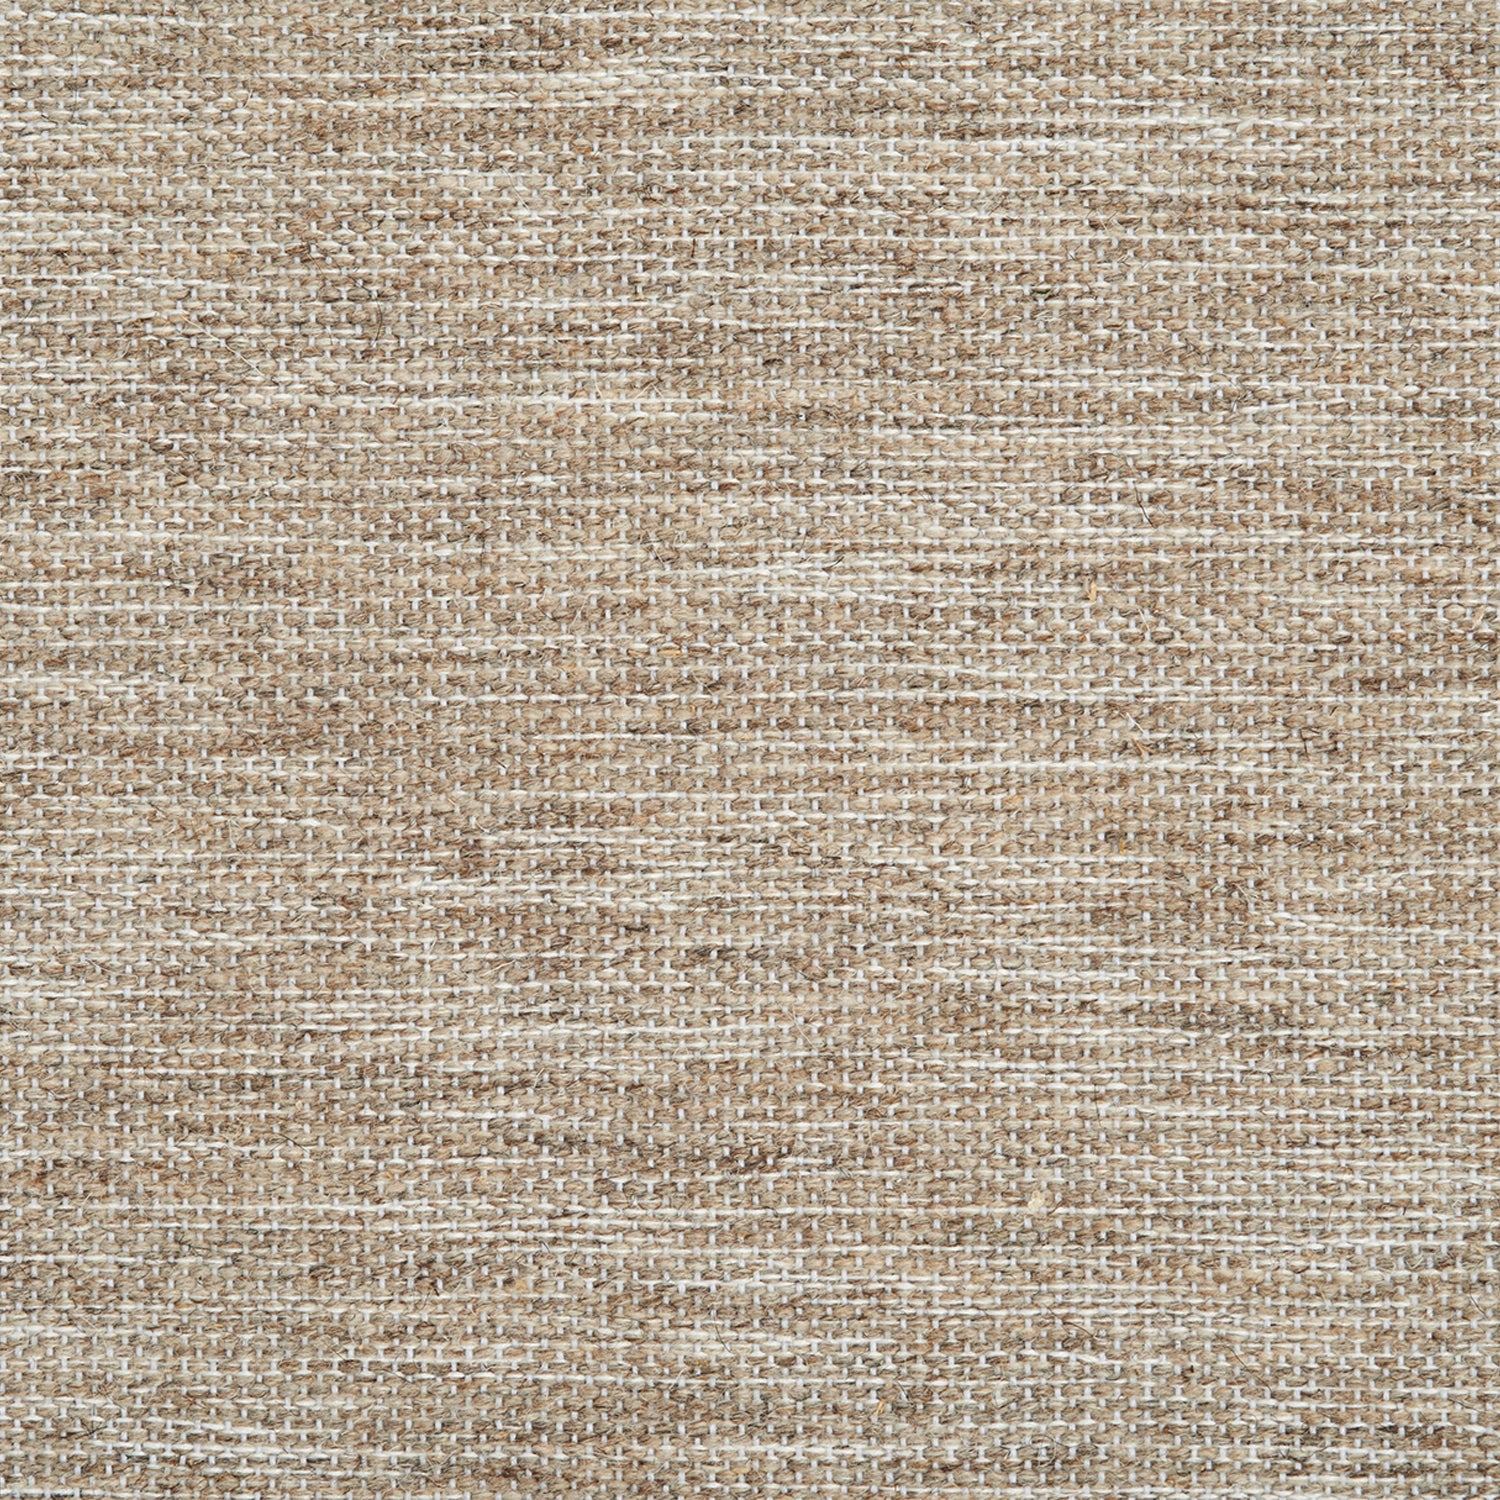 Wool-blend broadloom carpet swatch in a chunky mottled canvas weave.